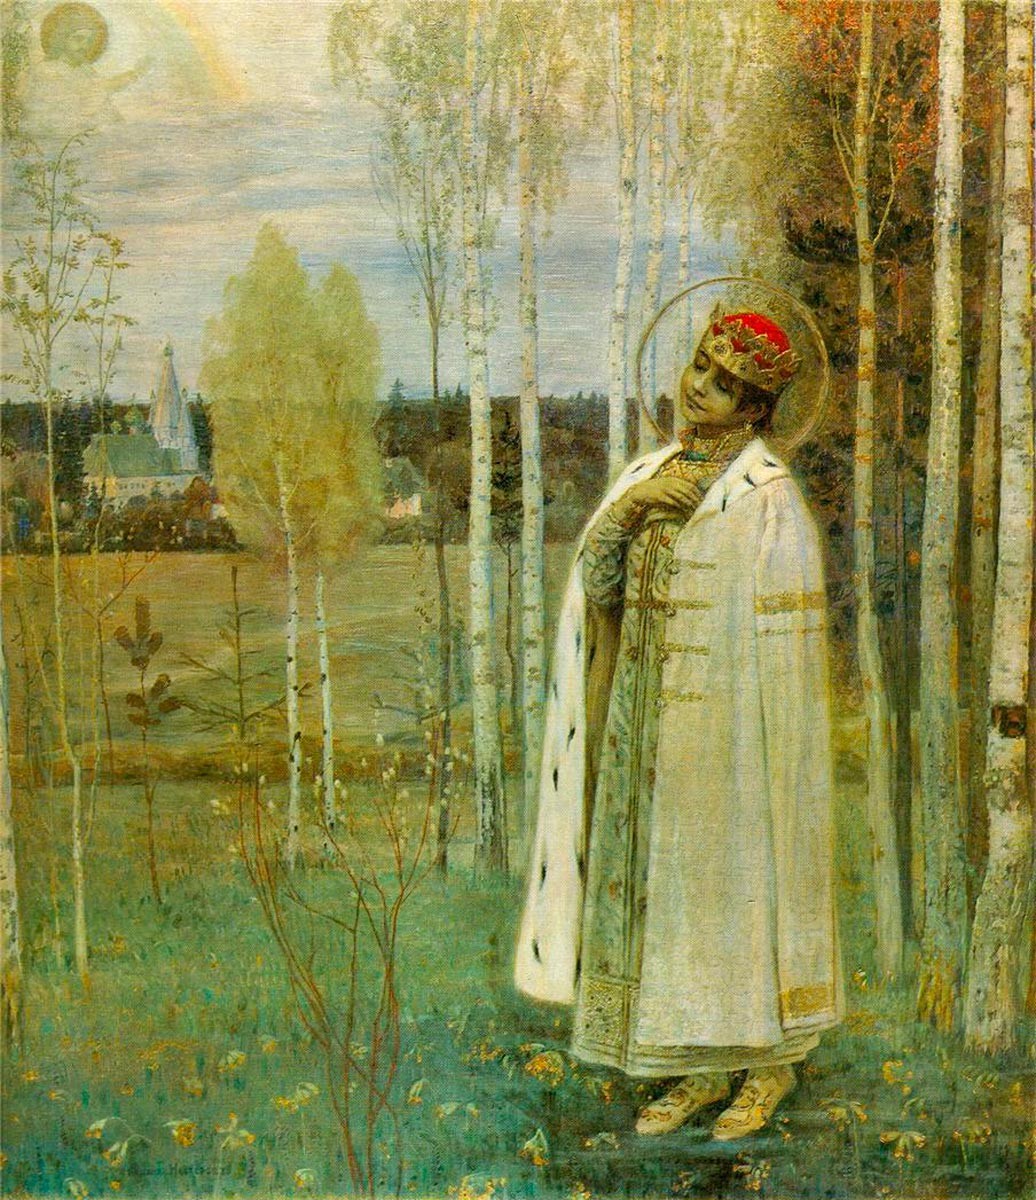 Portrait du tsarévitch Dmitri par Mikhaïl Nesterov, 1899